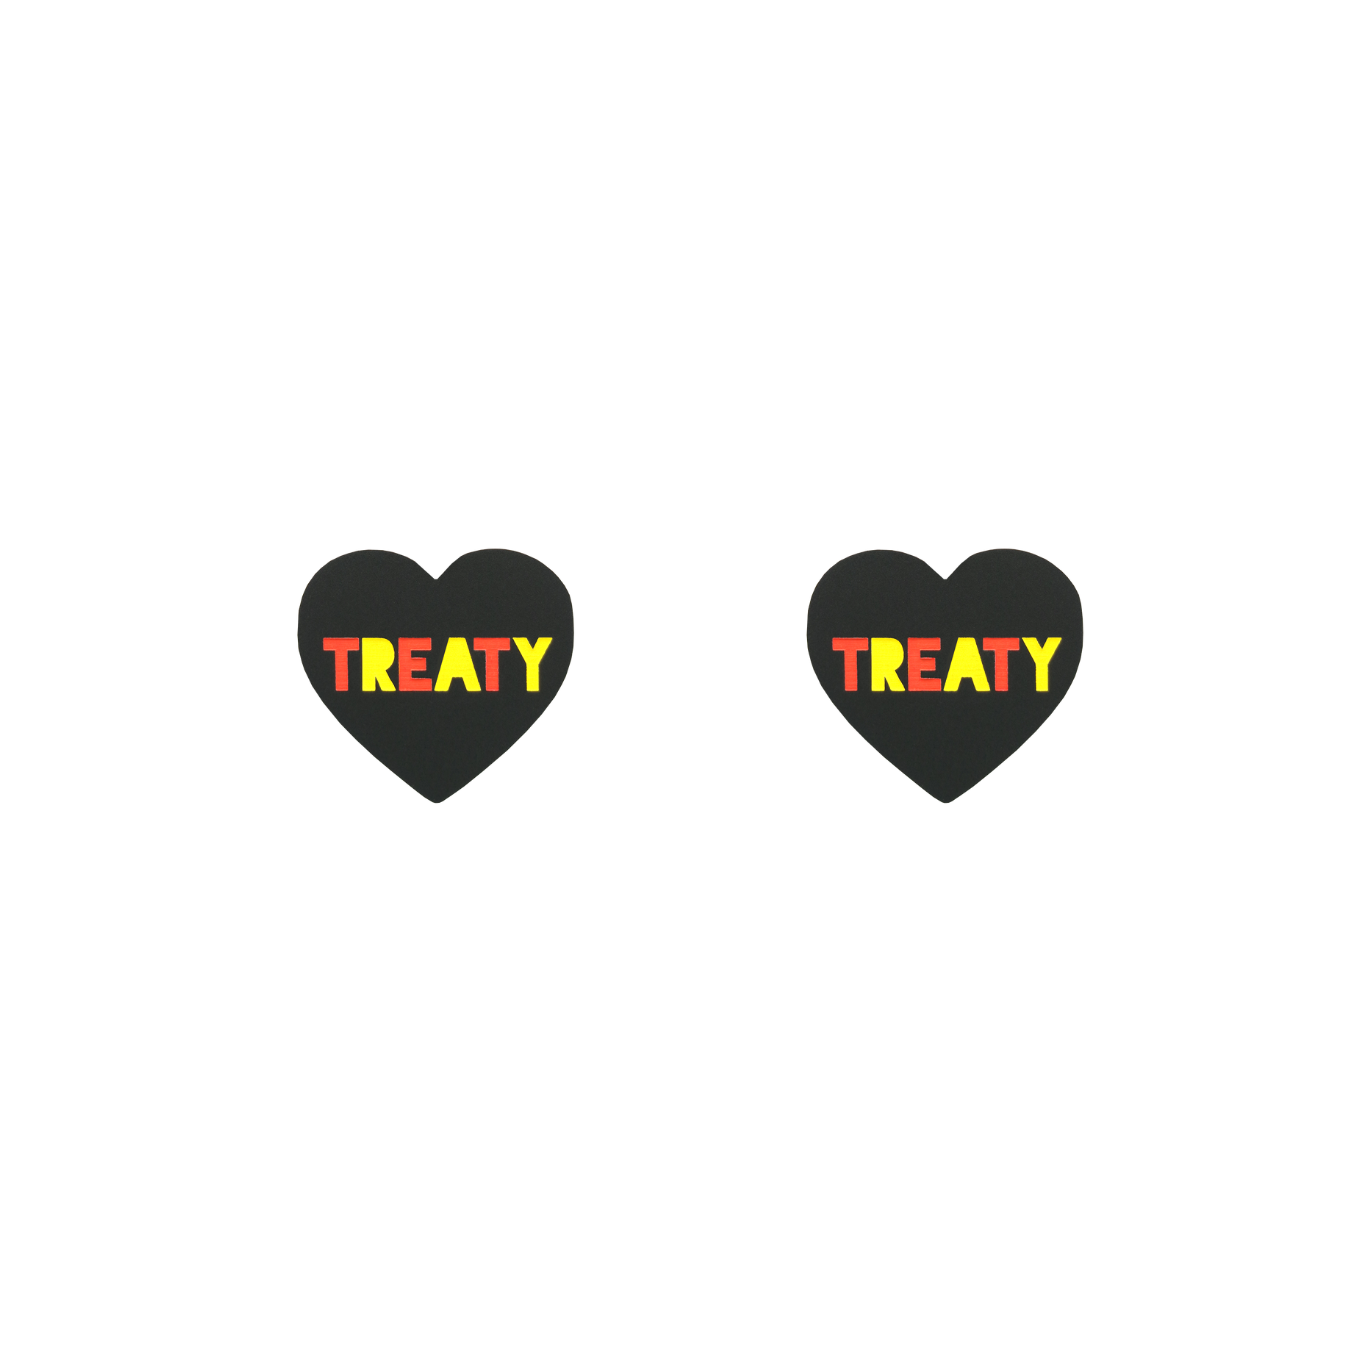 Haus of Dizzy 'Treaty' Heart Earrings